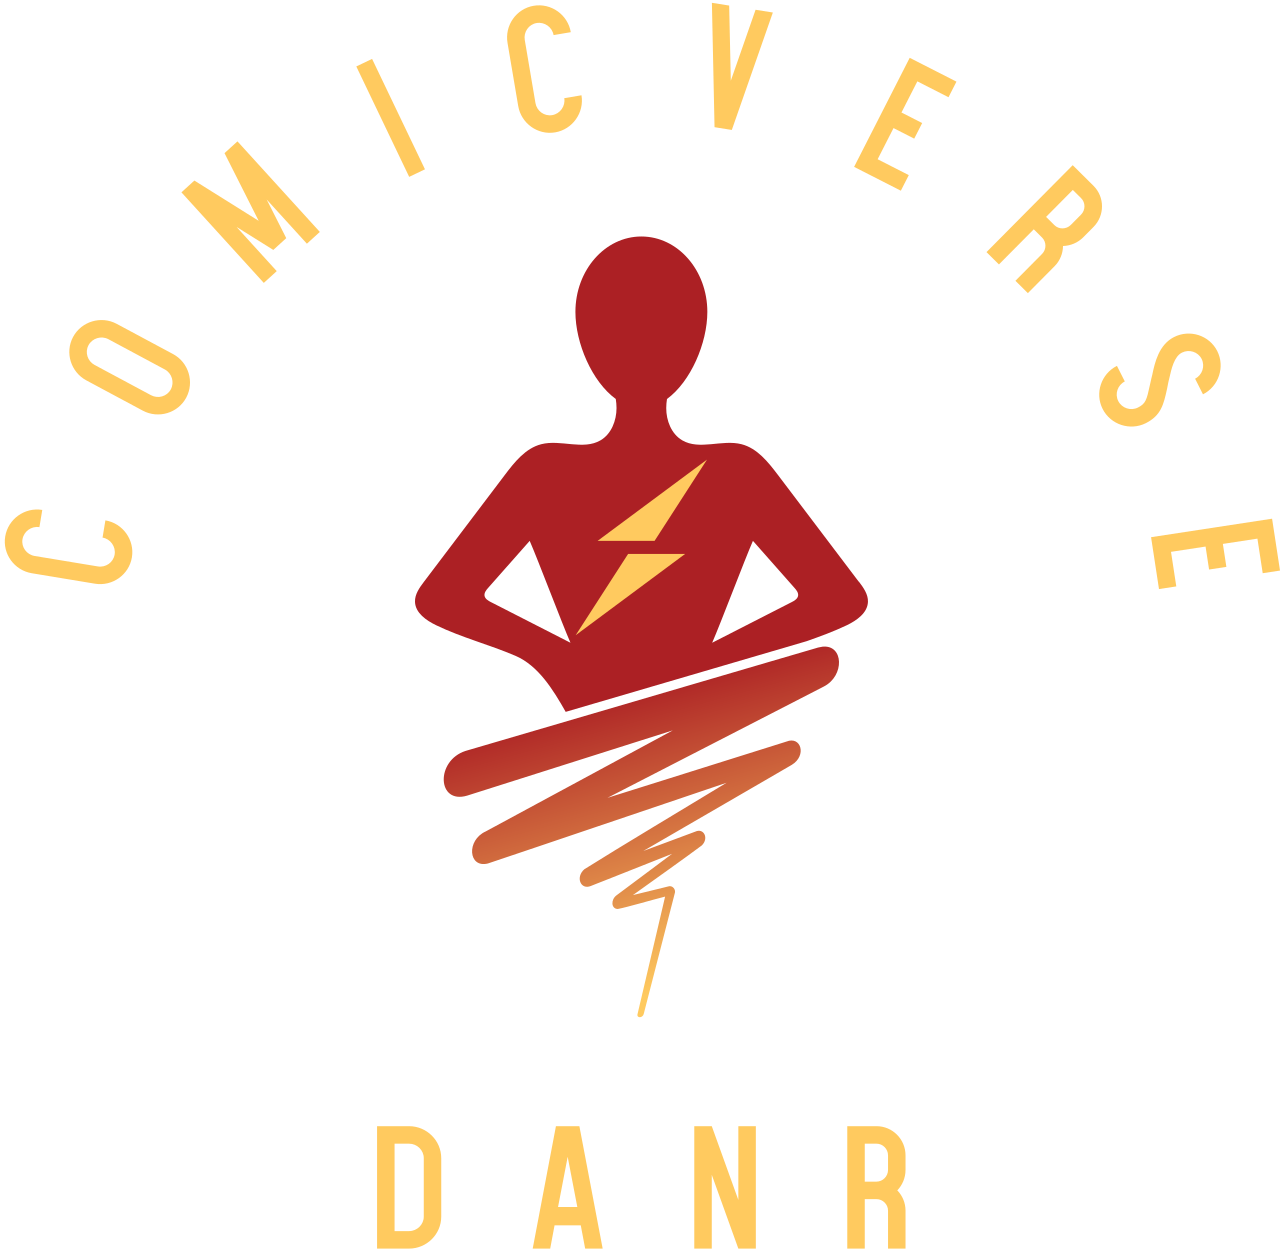 DANR's web page